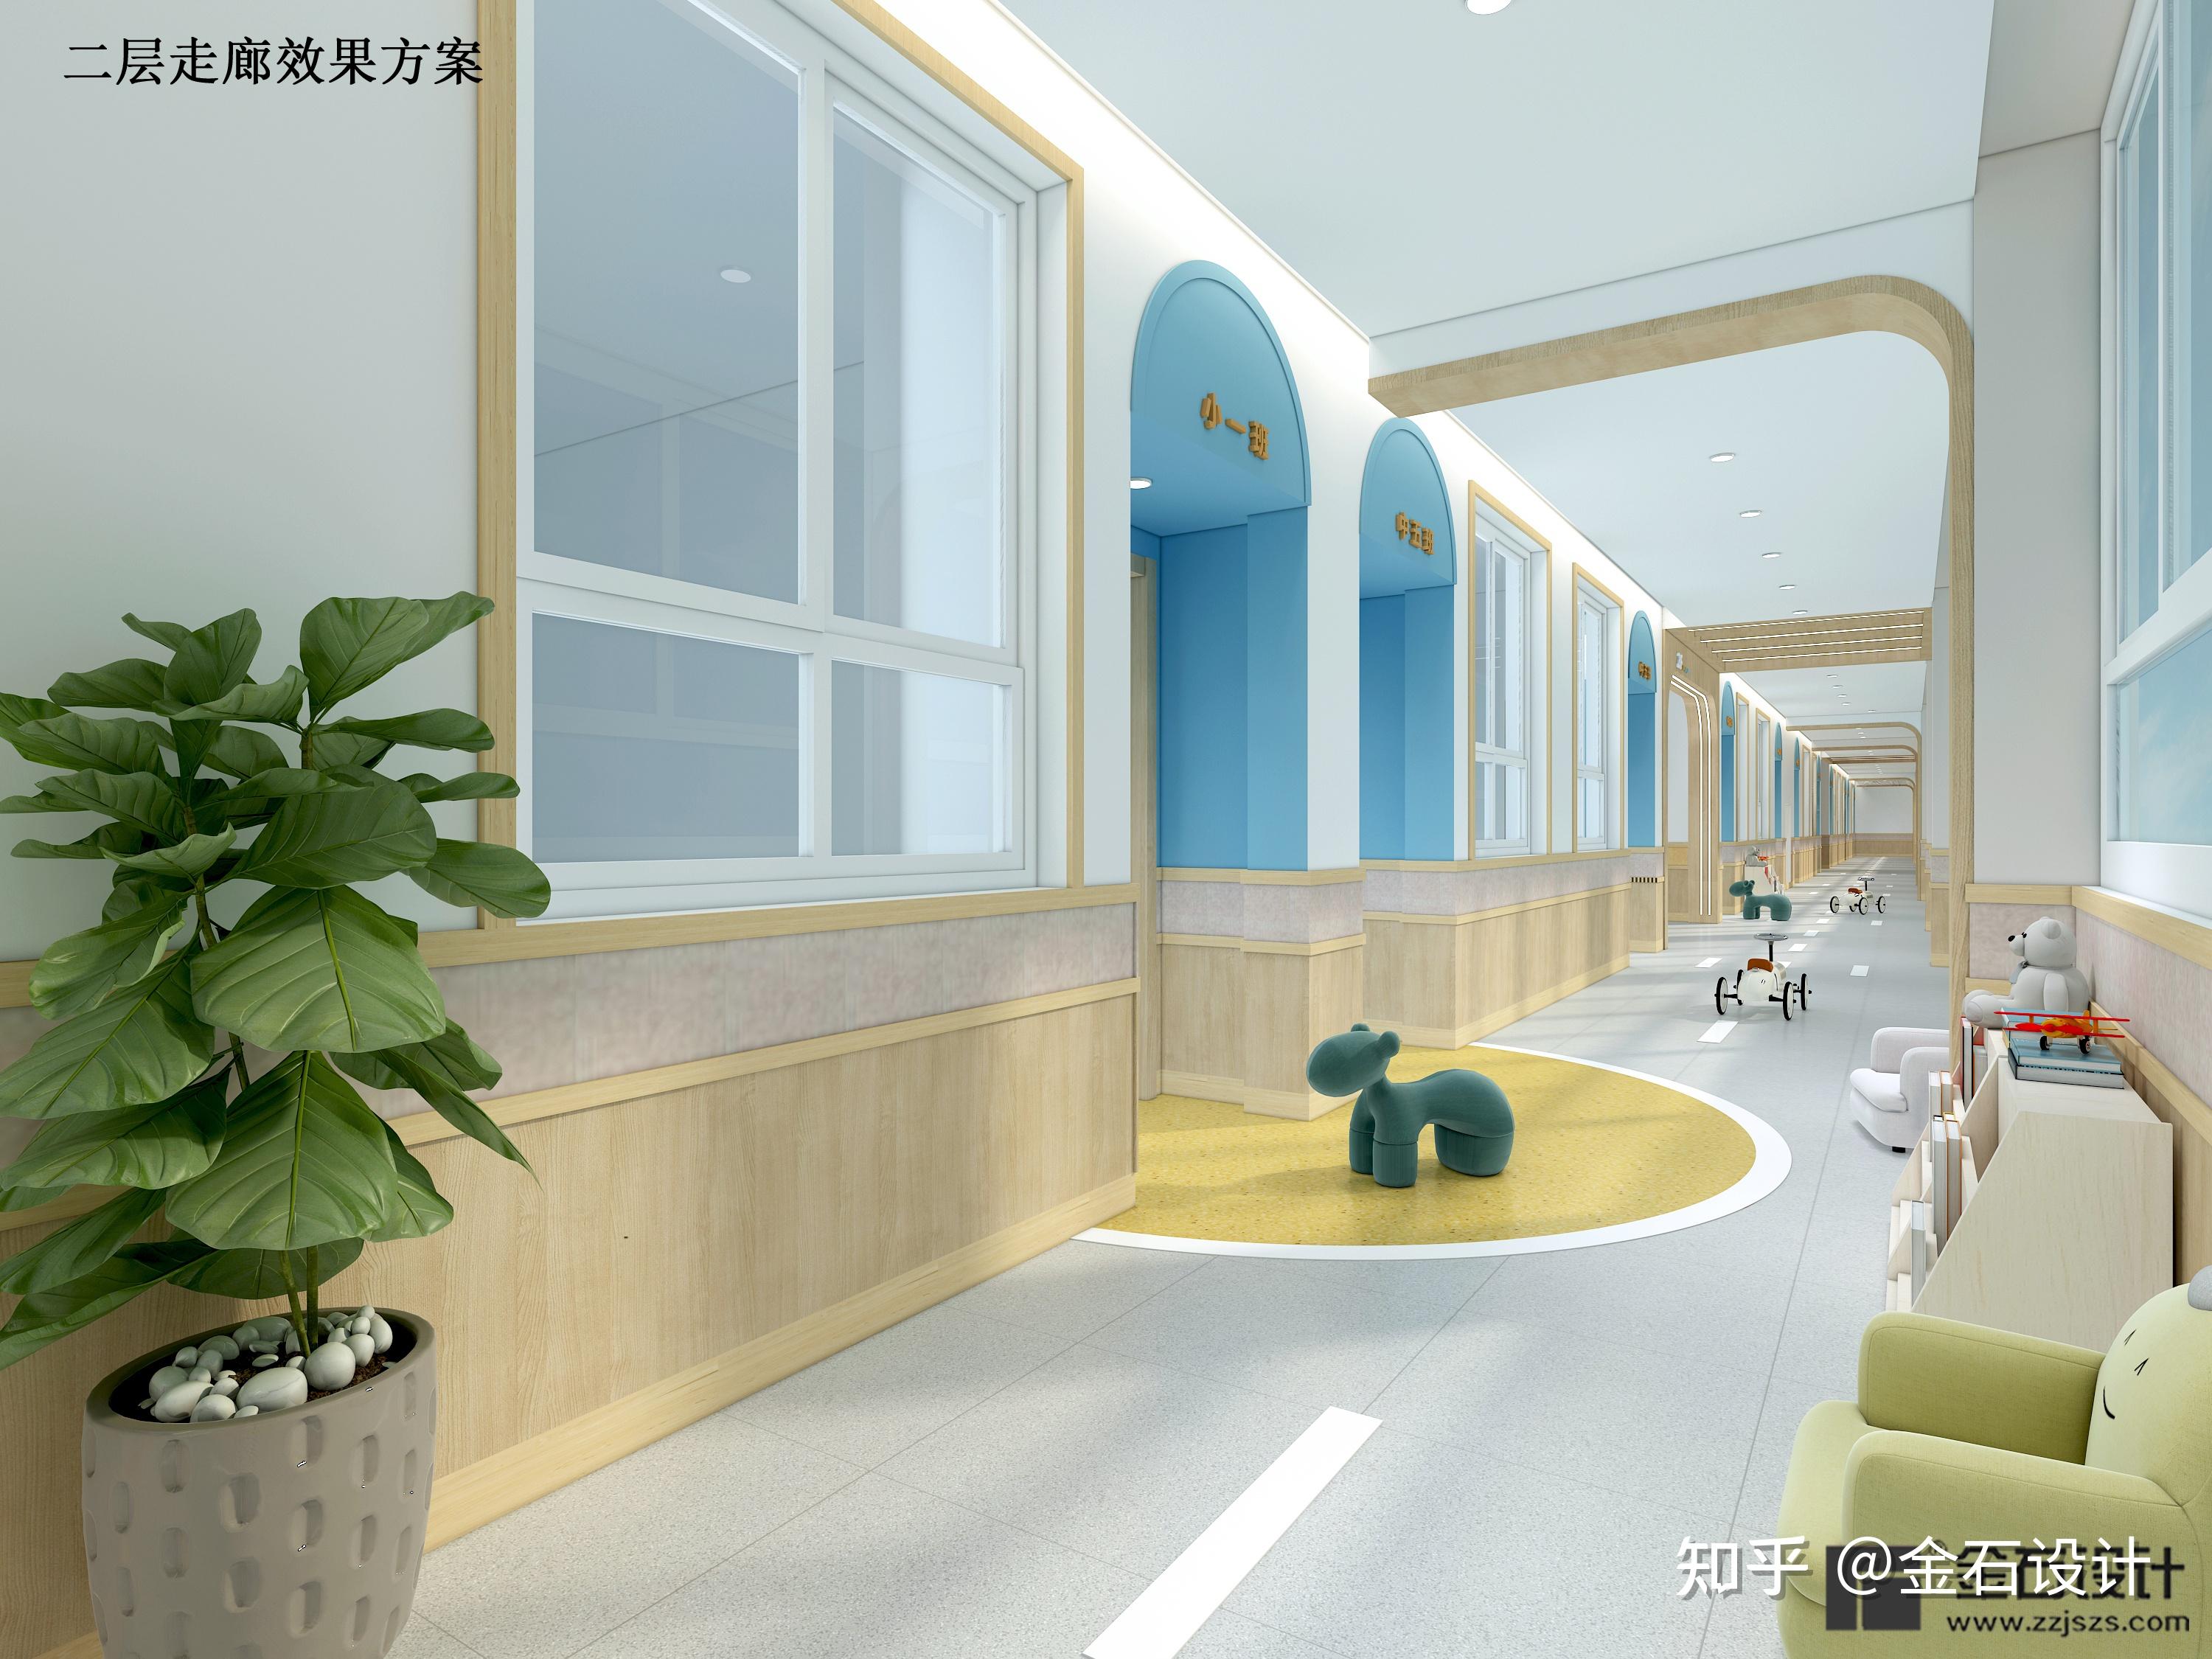 【新中式幼儿园走廊3d模型】建E网_新中式幼儿园走廊3d模型下载[ID:107566169]_打造3d新中式幼儿园走廊模型免费下载平台